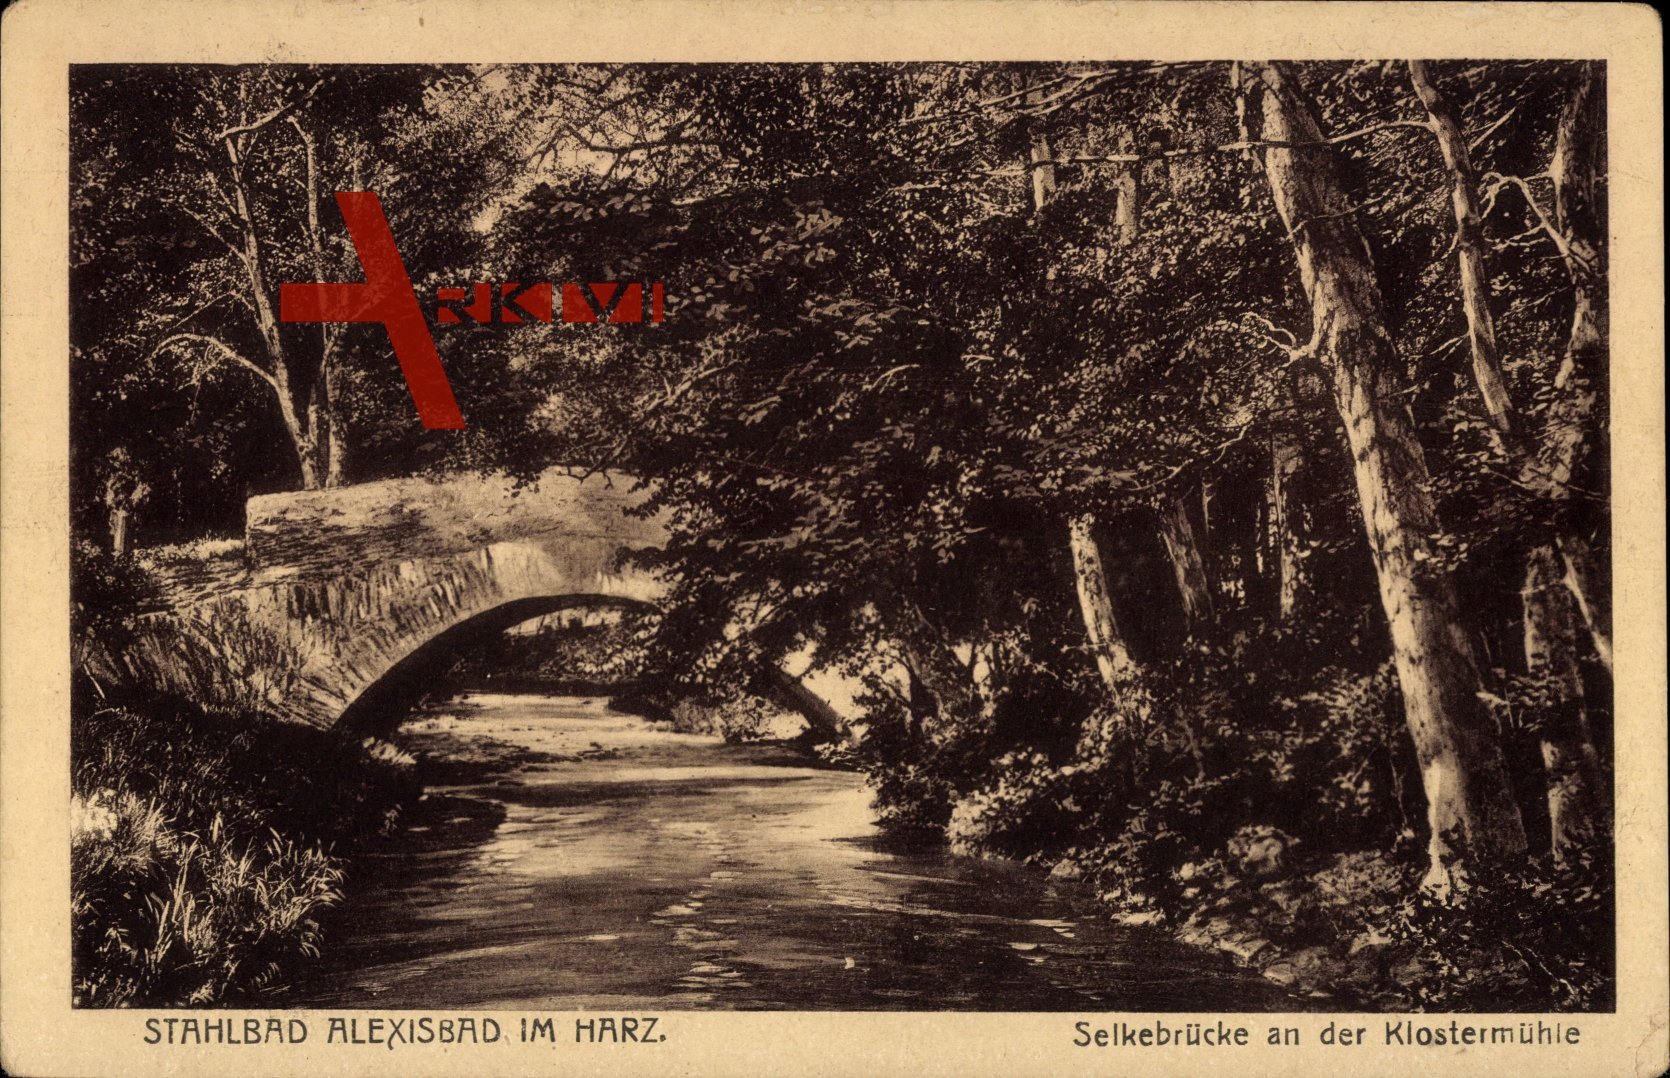 Stahlbad Alexisbad im Harz, Selkebrücke an der Klostermühle, Bach